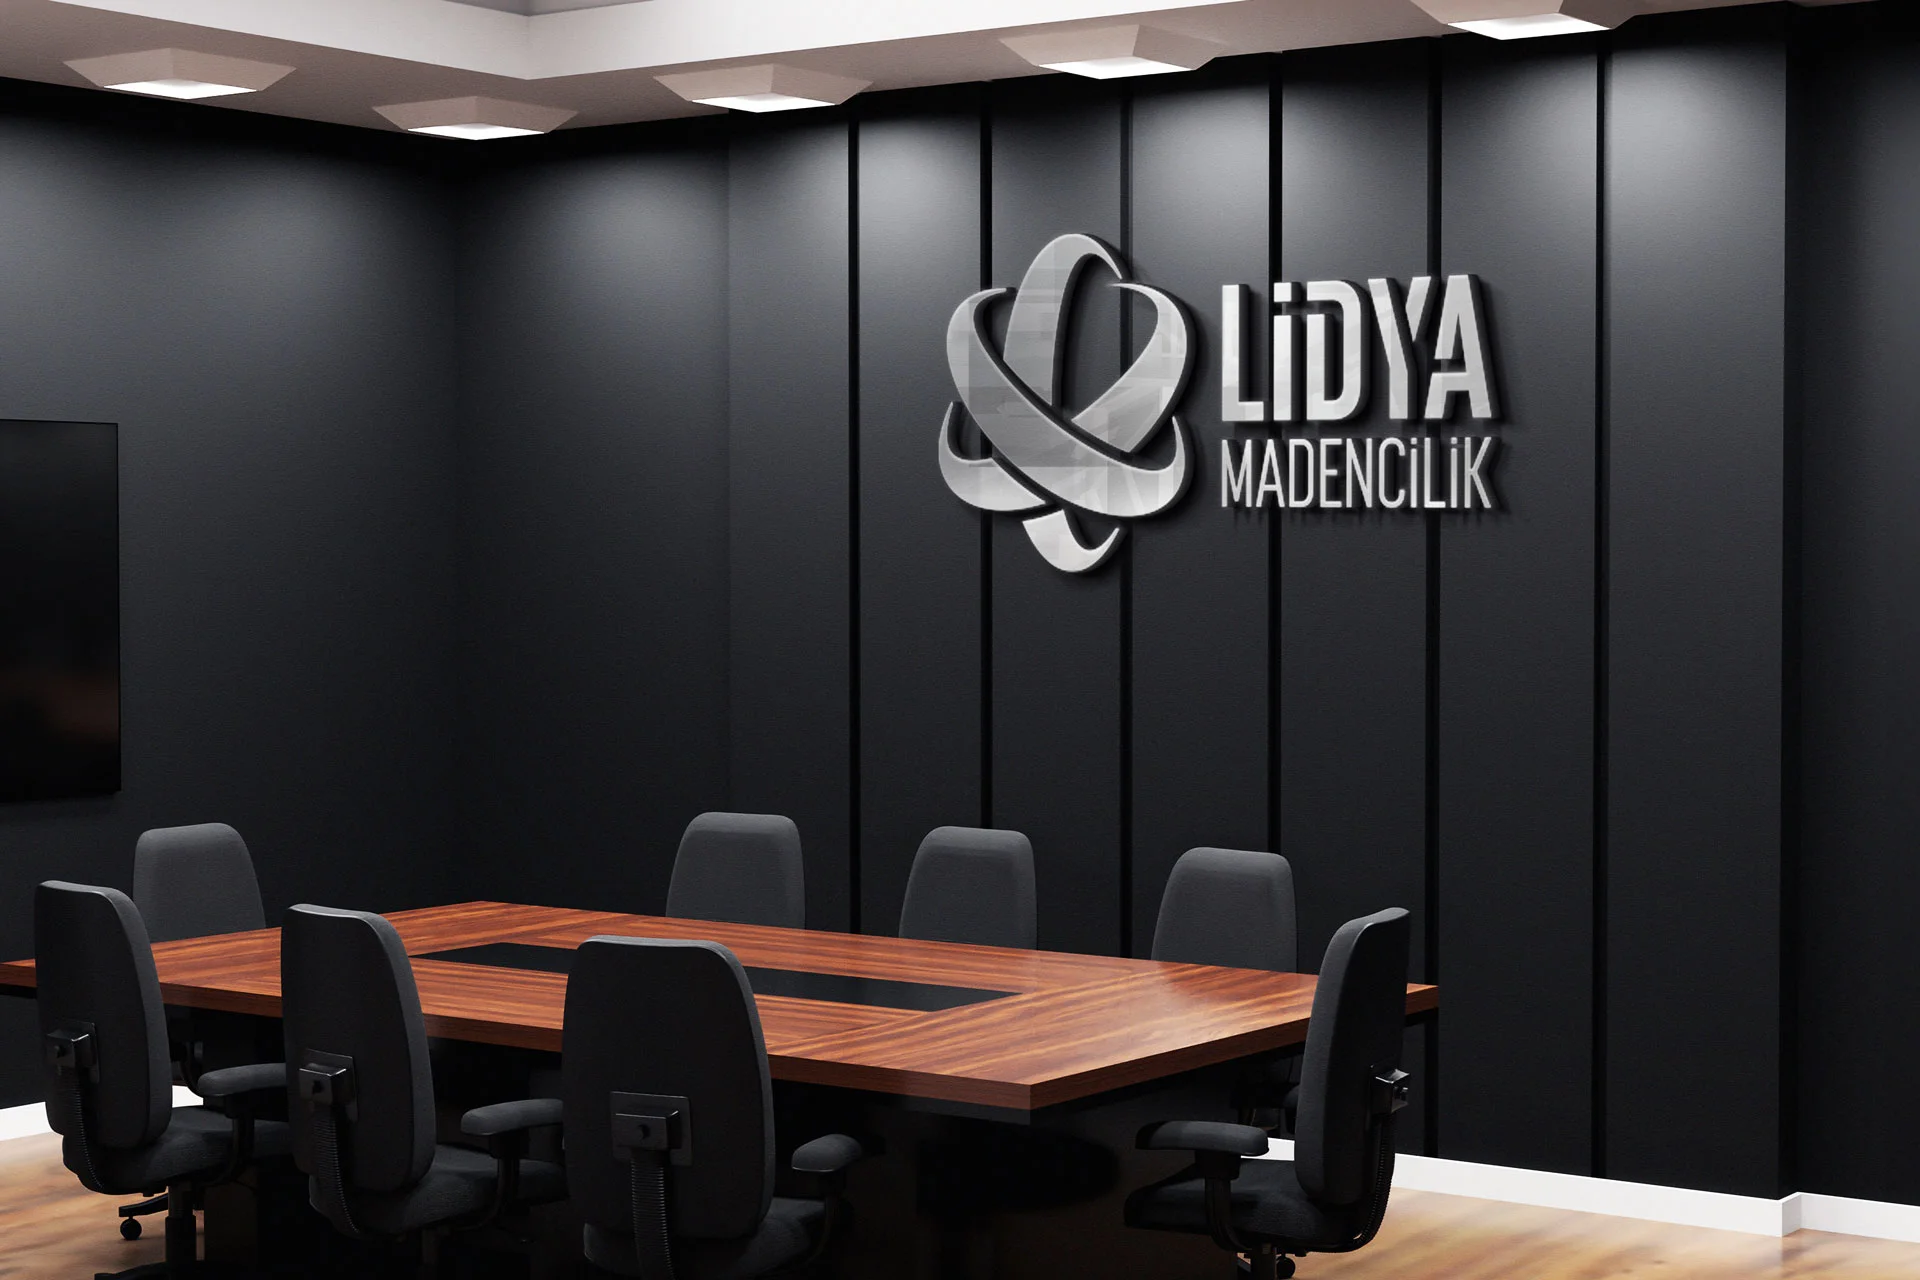 Lidya Madencilik | Contact